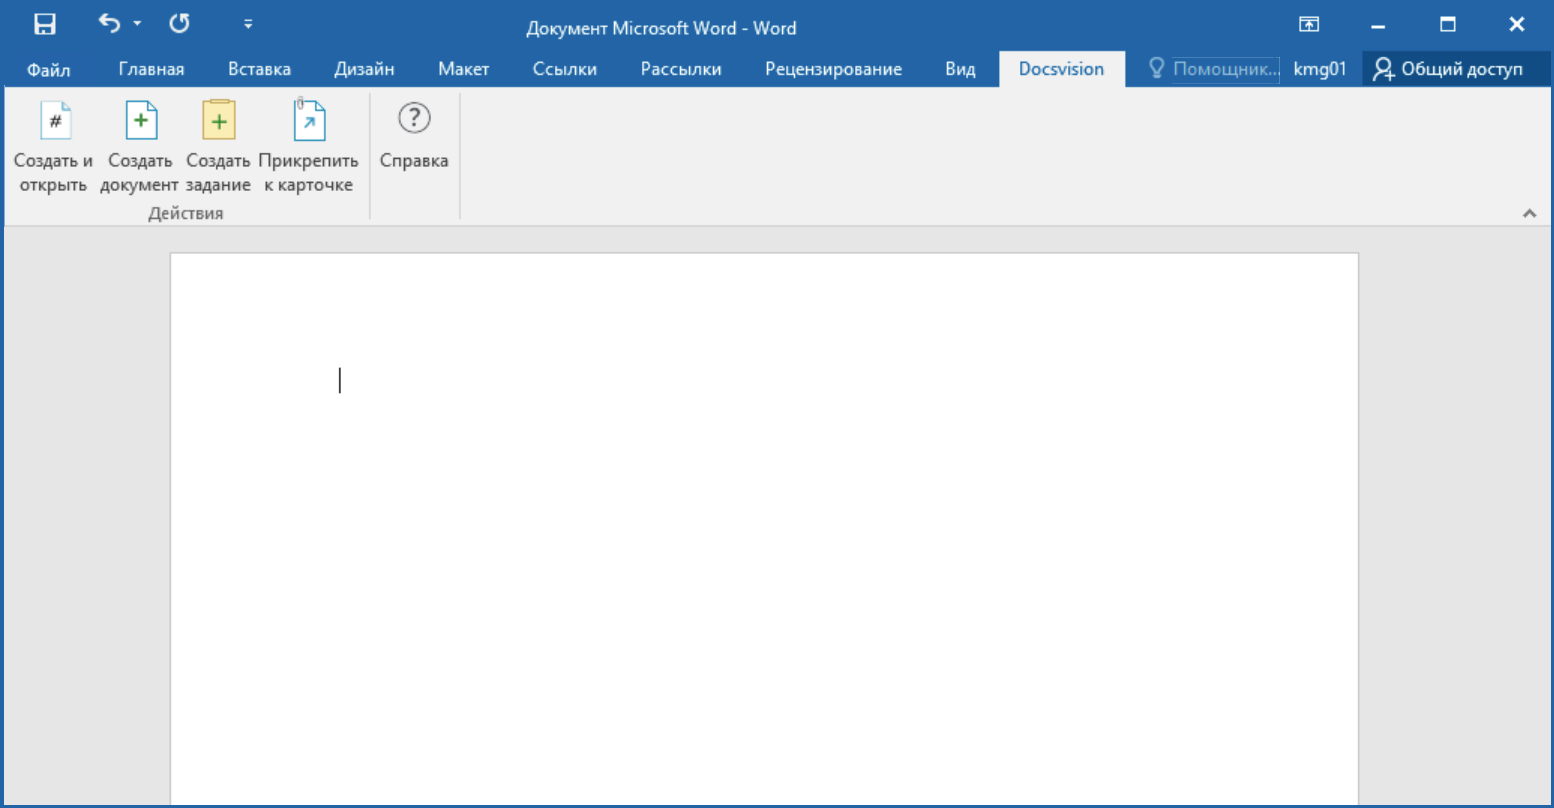 Панель инструментов СЭД Docsvision в интерфейсе Microsoft Word